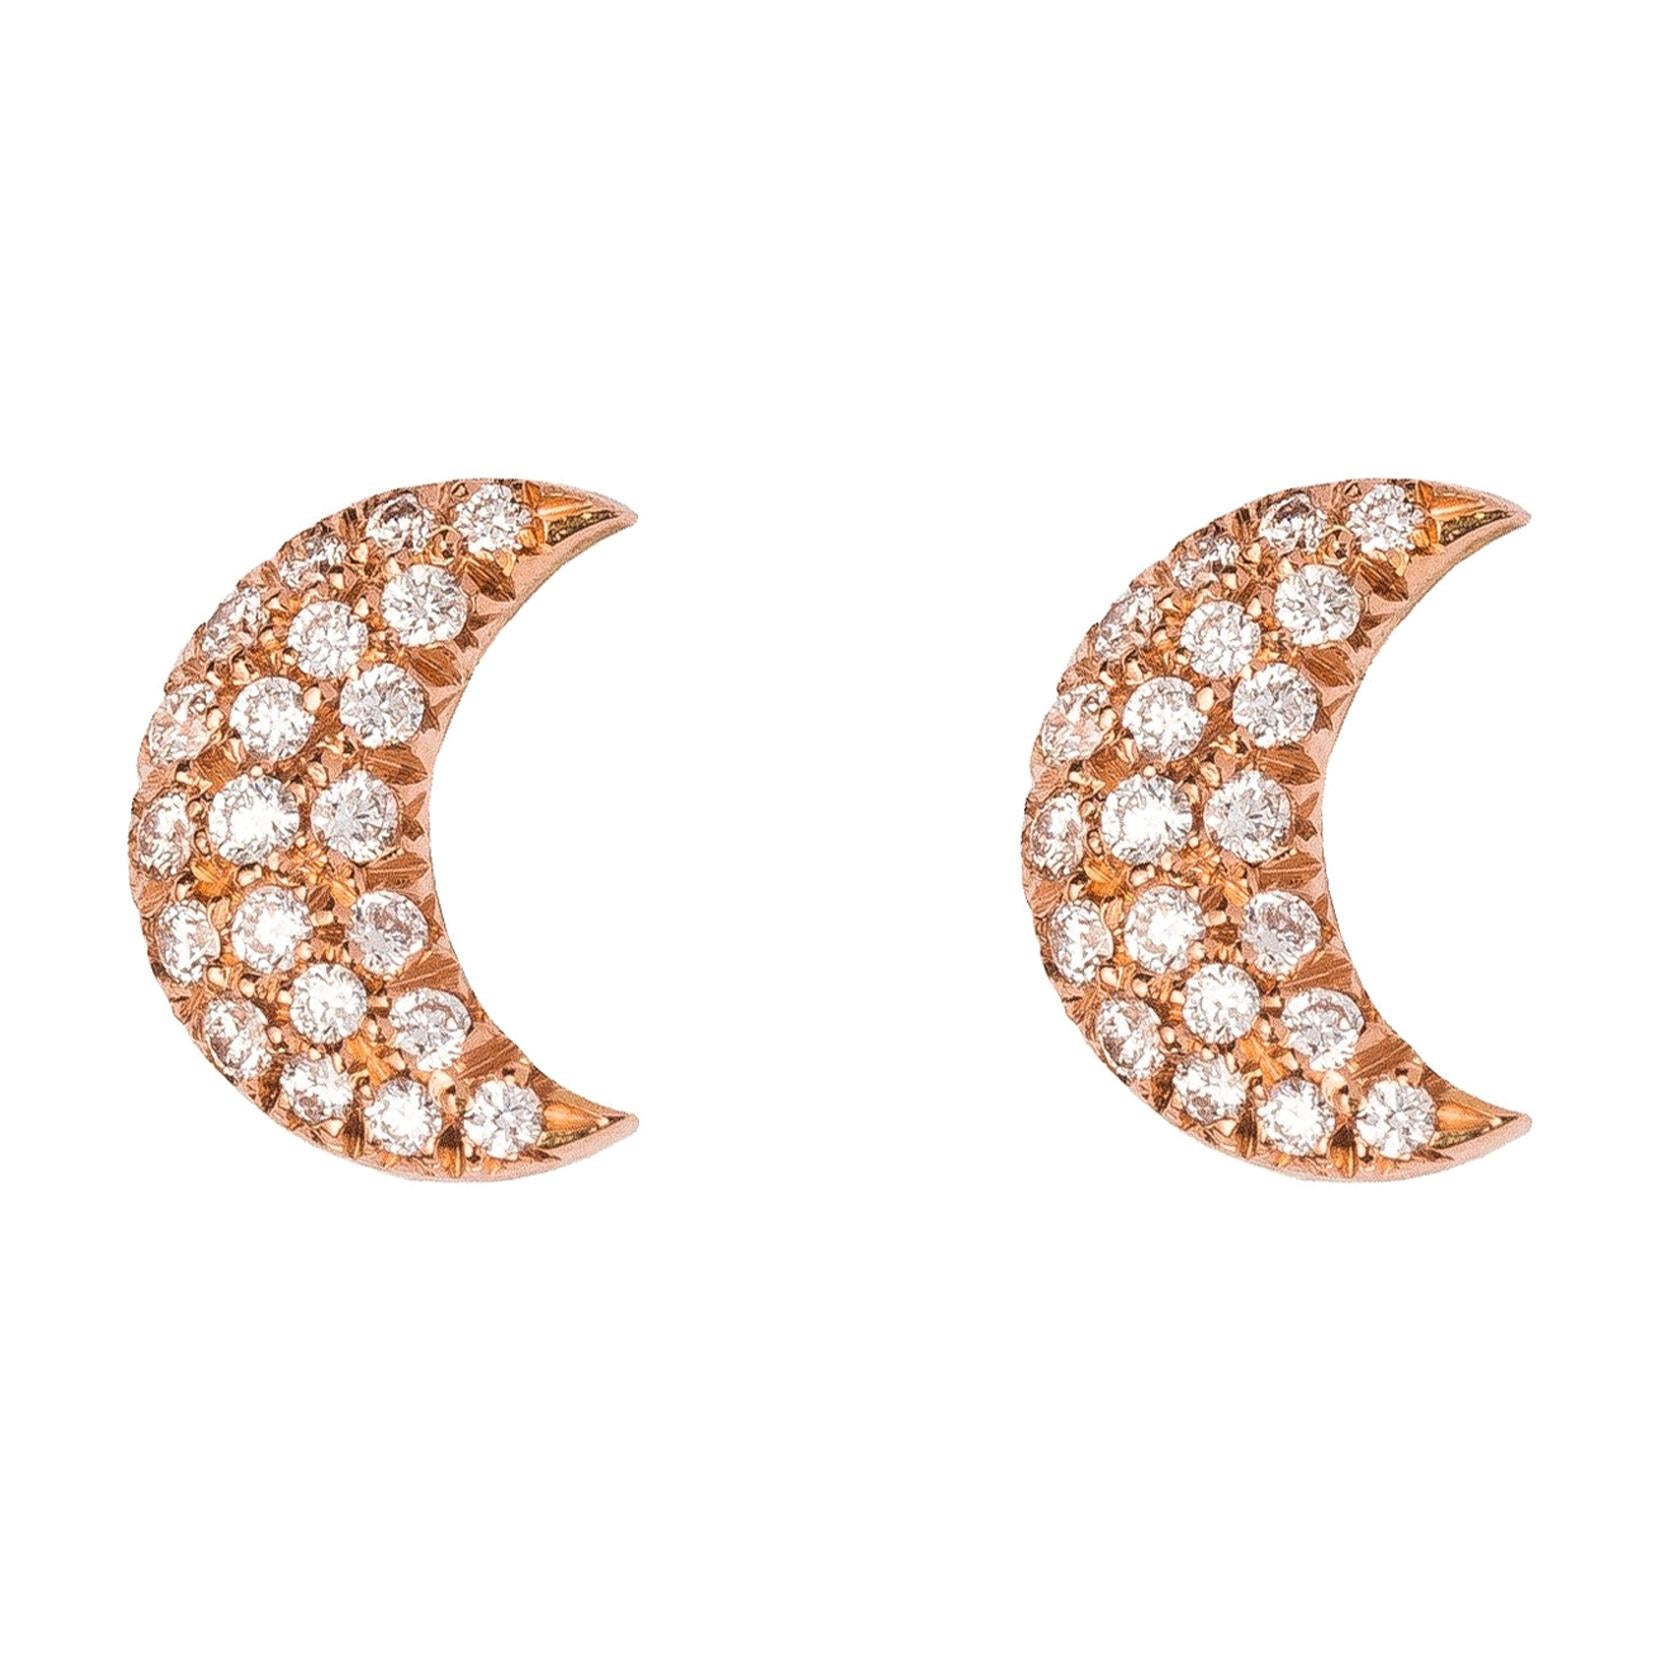 Celaeno Earrings, White Diamonds, 18 Karat Rose Gold For Sale